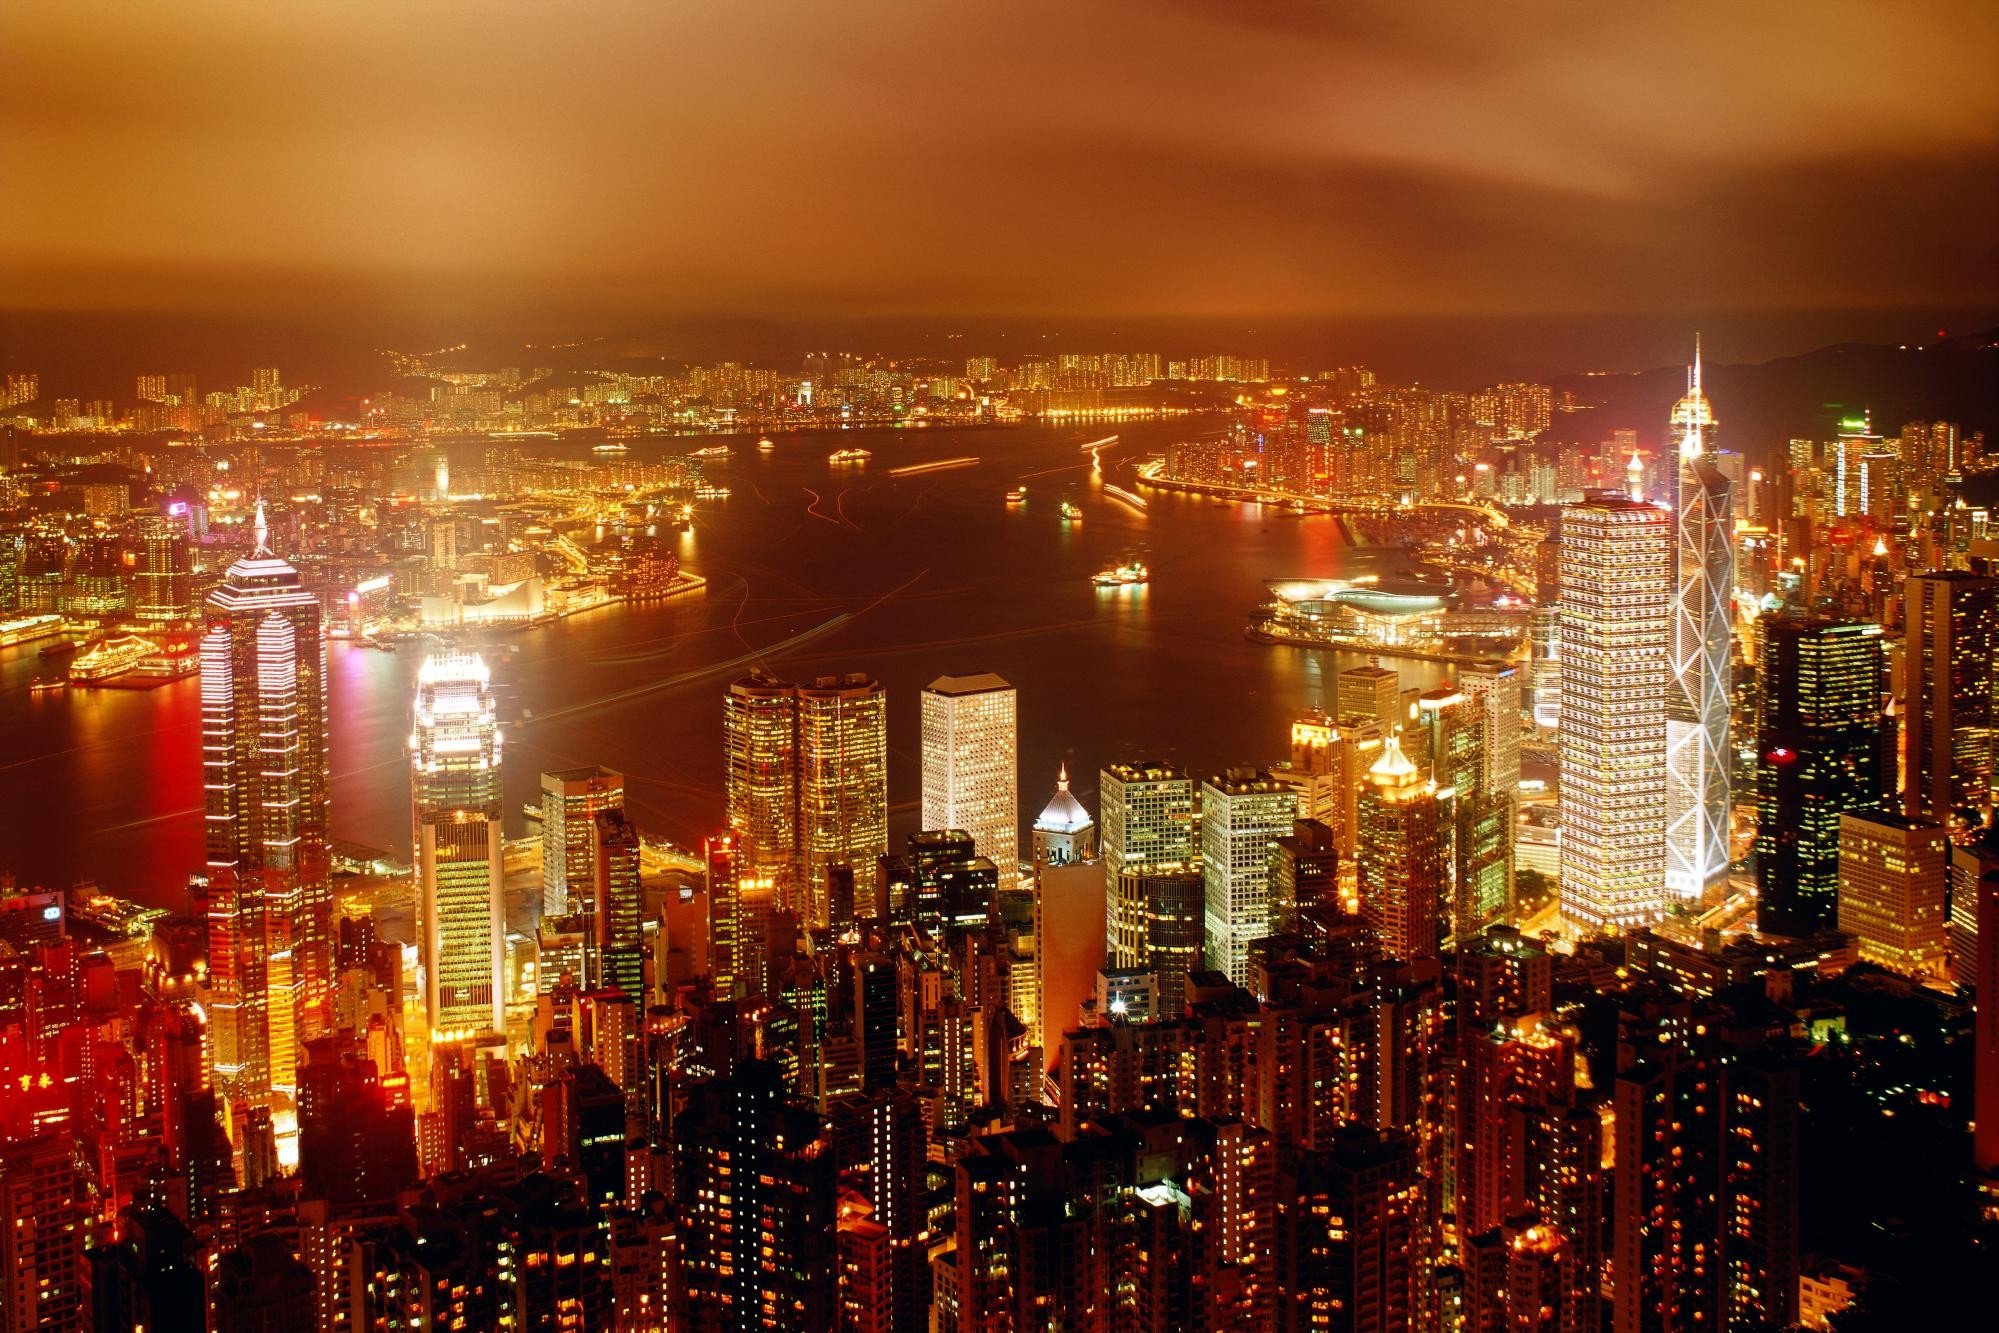 cityscape, Building, Lights, Hong Kong Wallpaper